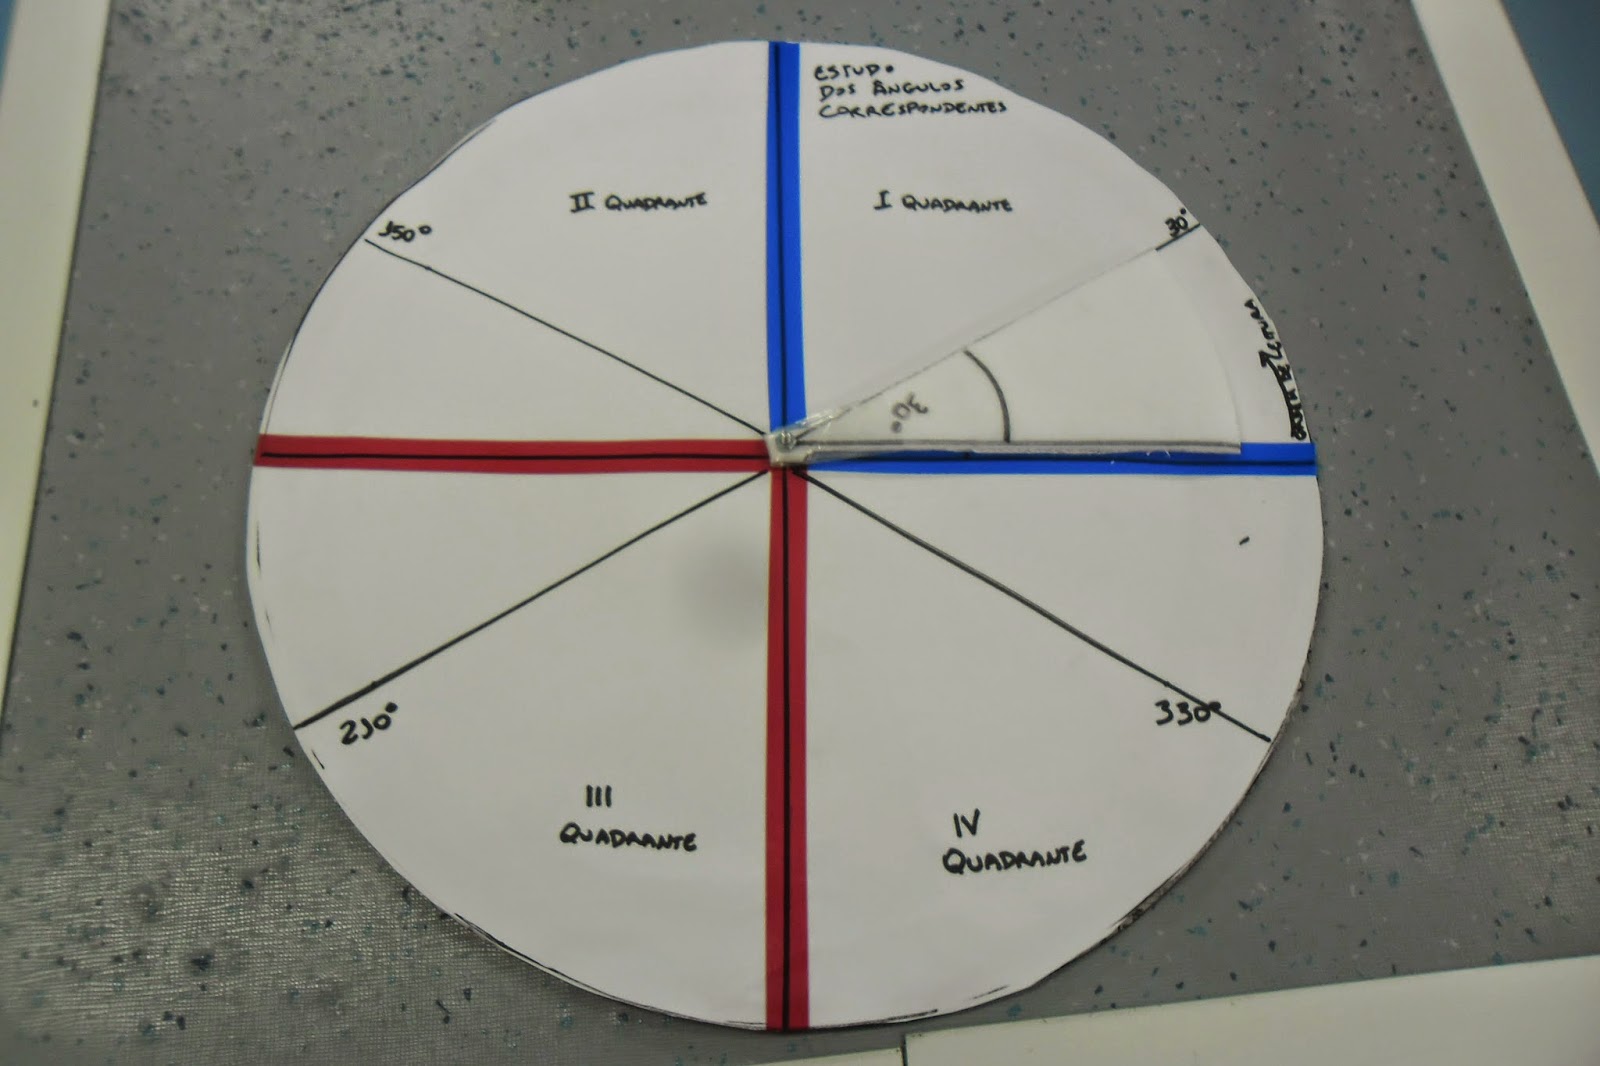 Entendendo a regra de sinais para as razões trigonométricas no círculo  unitário. Por Daniela Mendes.